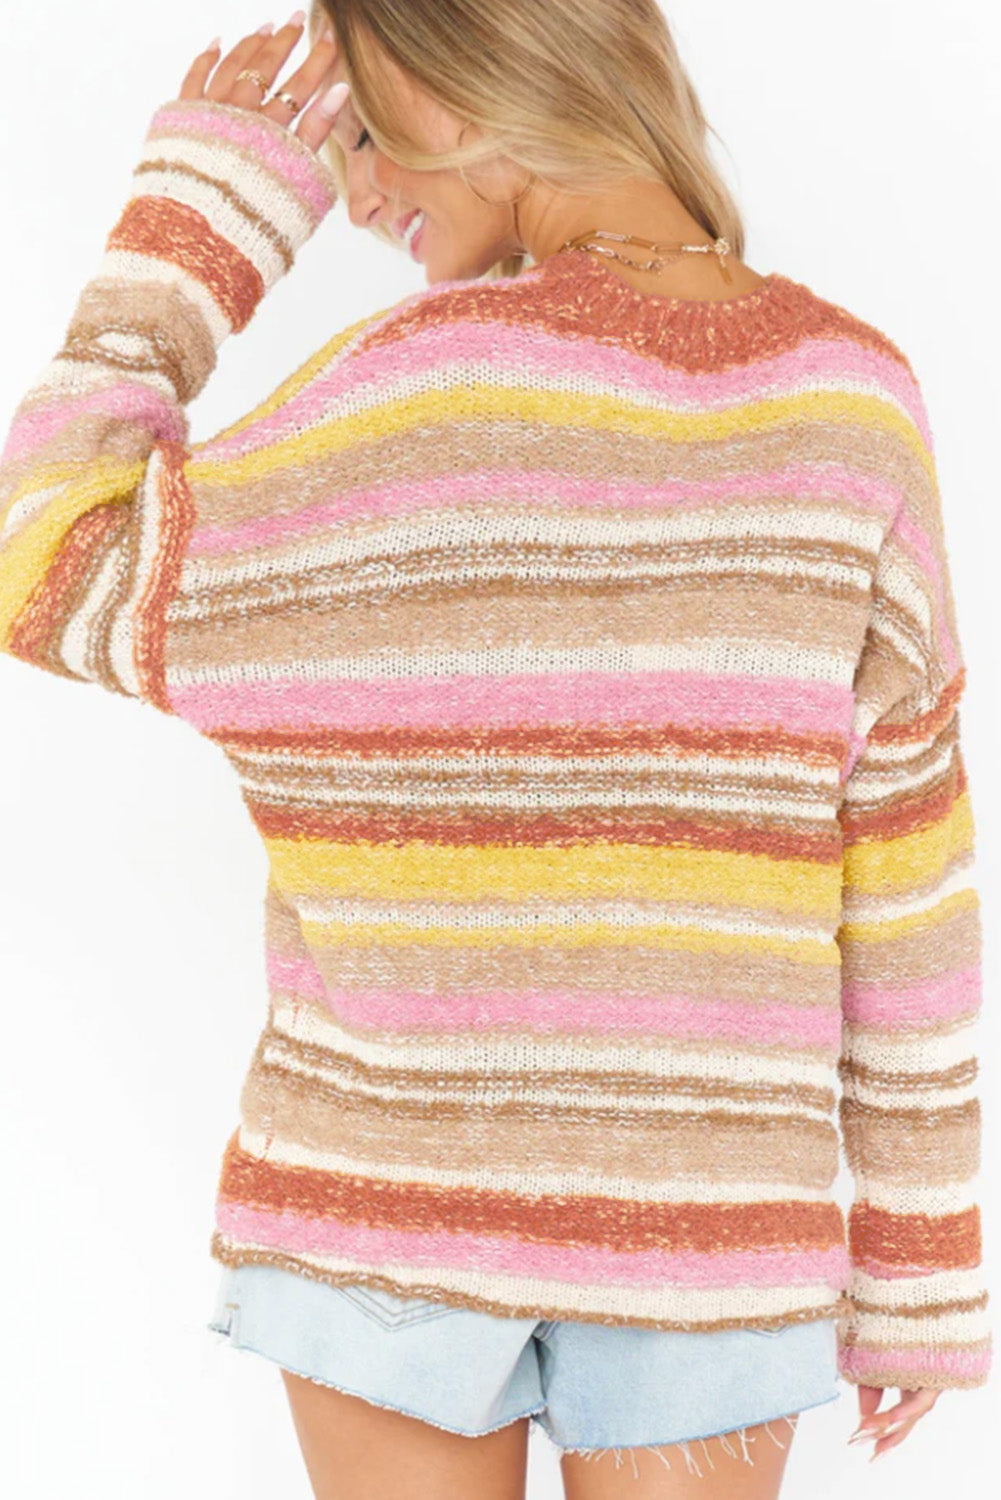 Večbarvni črtasti pleten pulover na spuščena ramena